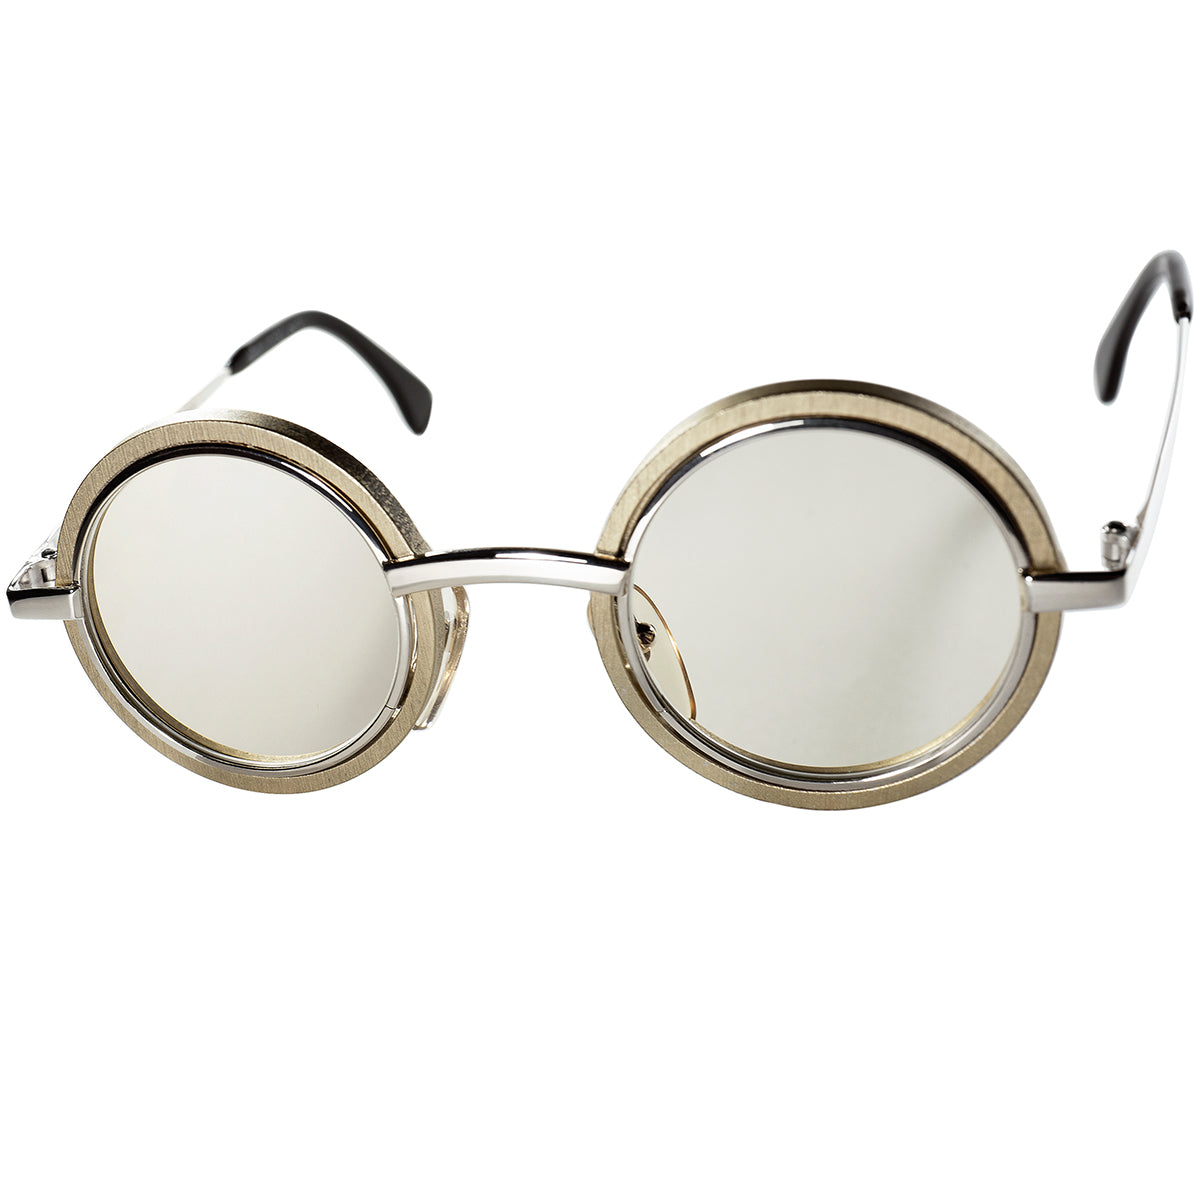 初期作品でもTOPレベルの完成度の実用的でCRAZYな 丸眼鏡 1980-90s初期FRANCE製 本人期デッドストック ALAIN MIKLI  アランミクリ INNER-RIM ROUND ビンテージ ヴィンテージ 眼鏡 メガネ 【a8291】